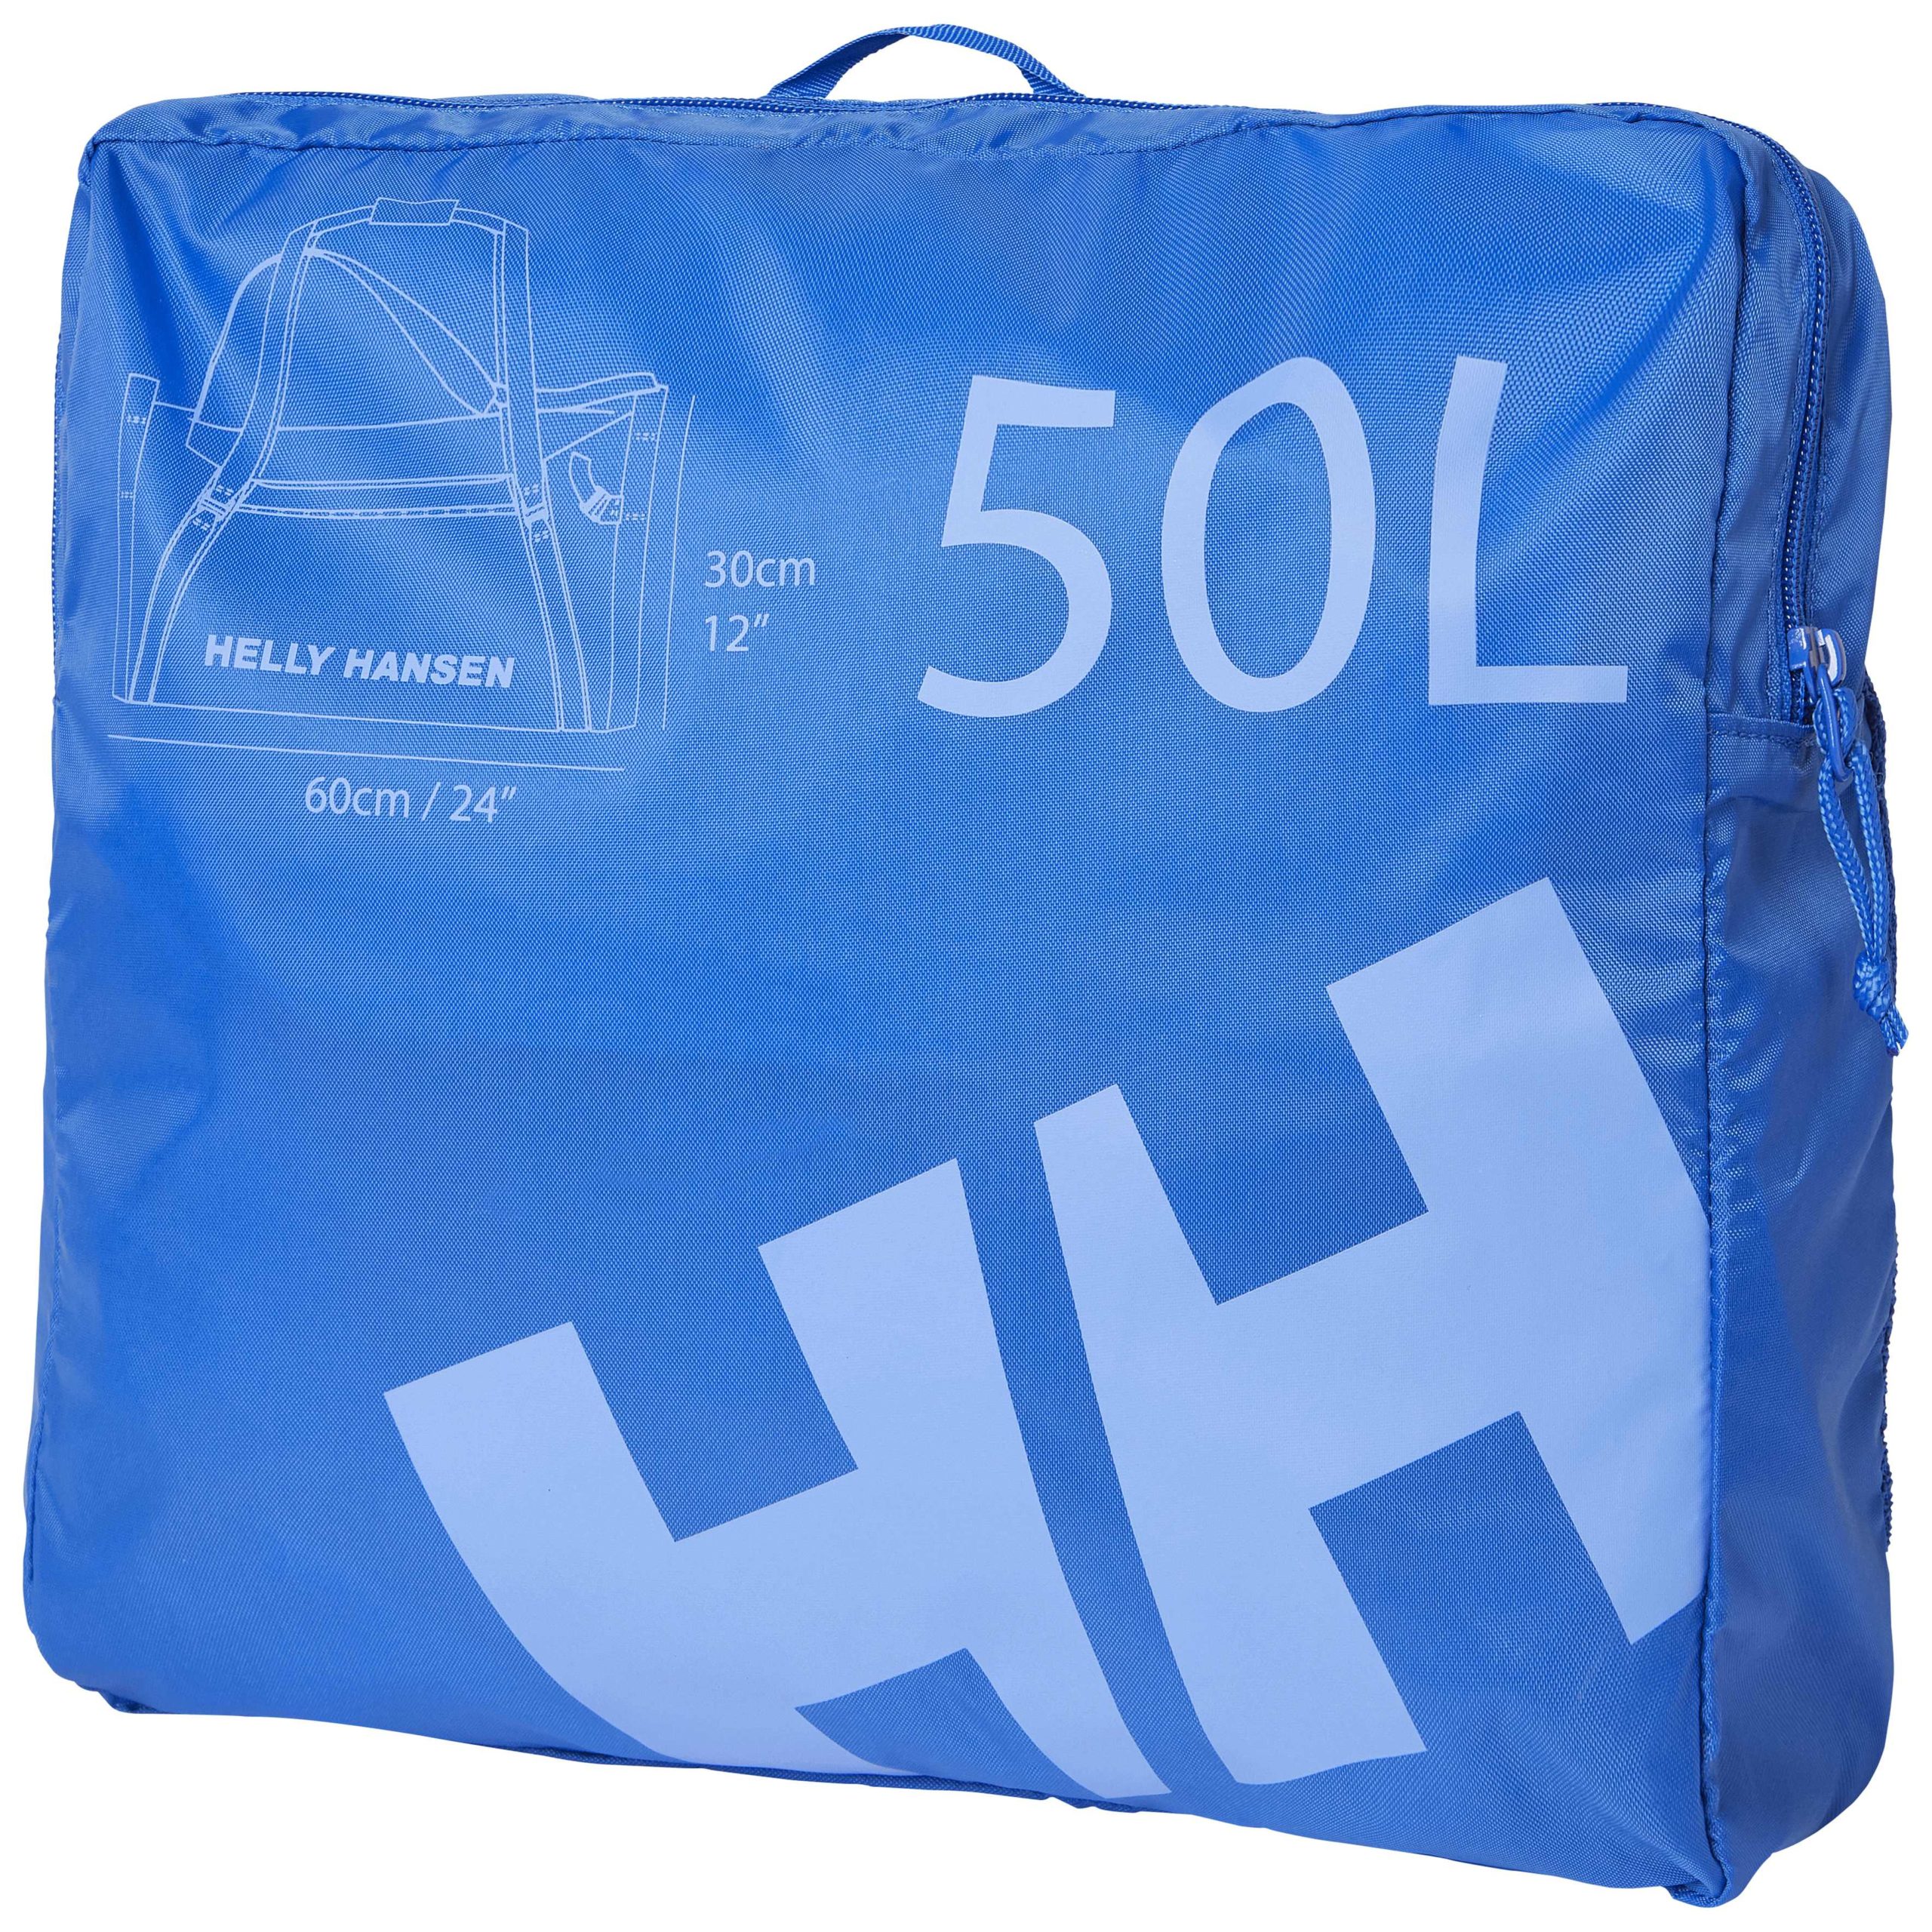 Helly Hansen 2 Duffel Bag - Black,50 Litre